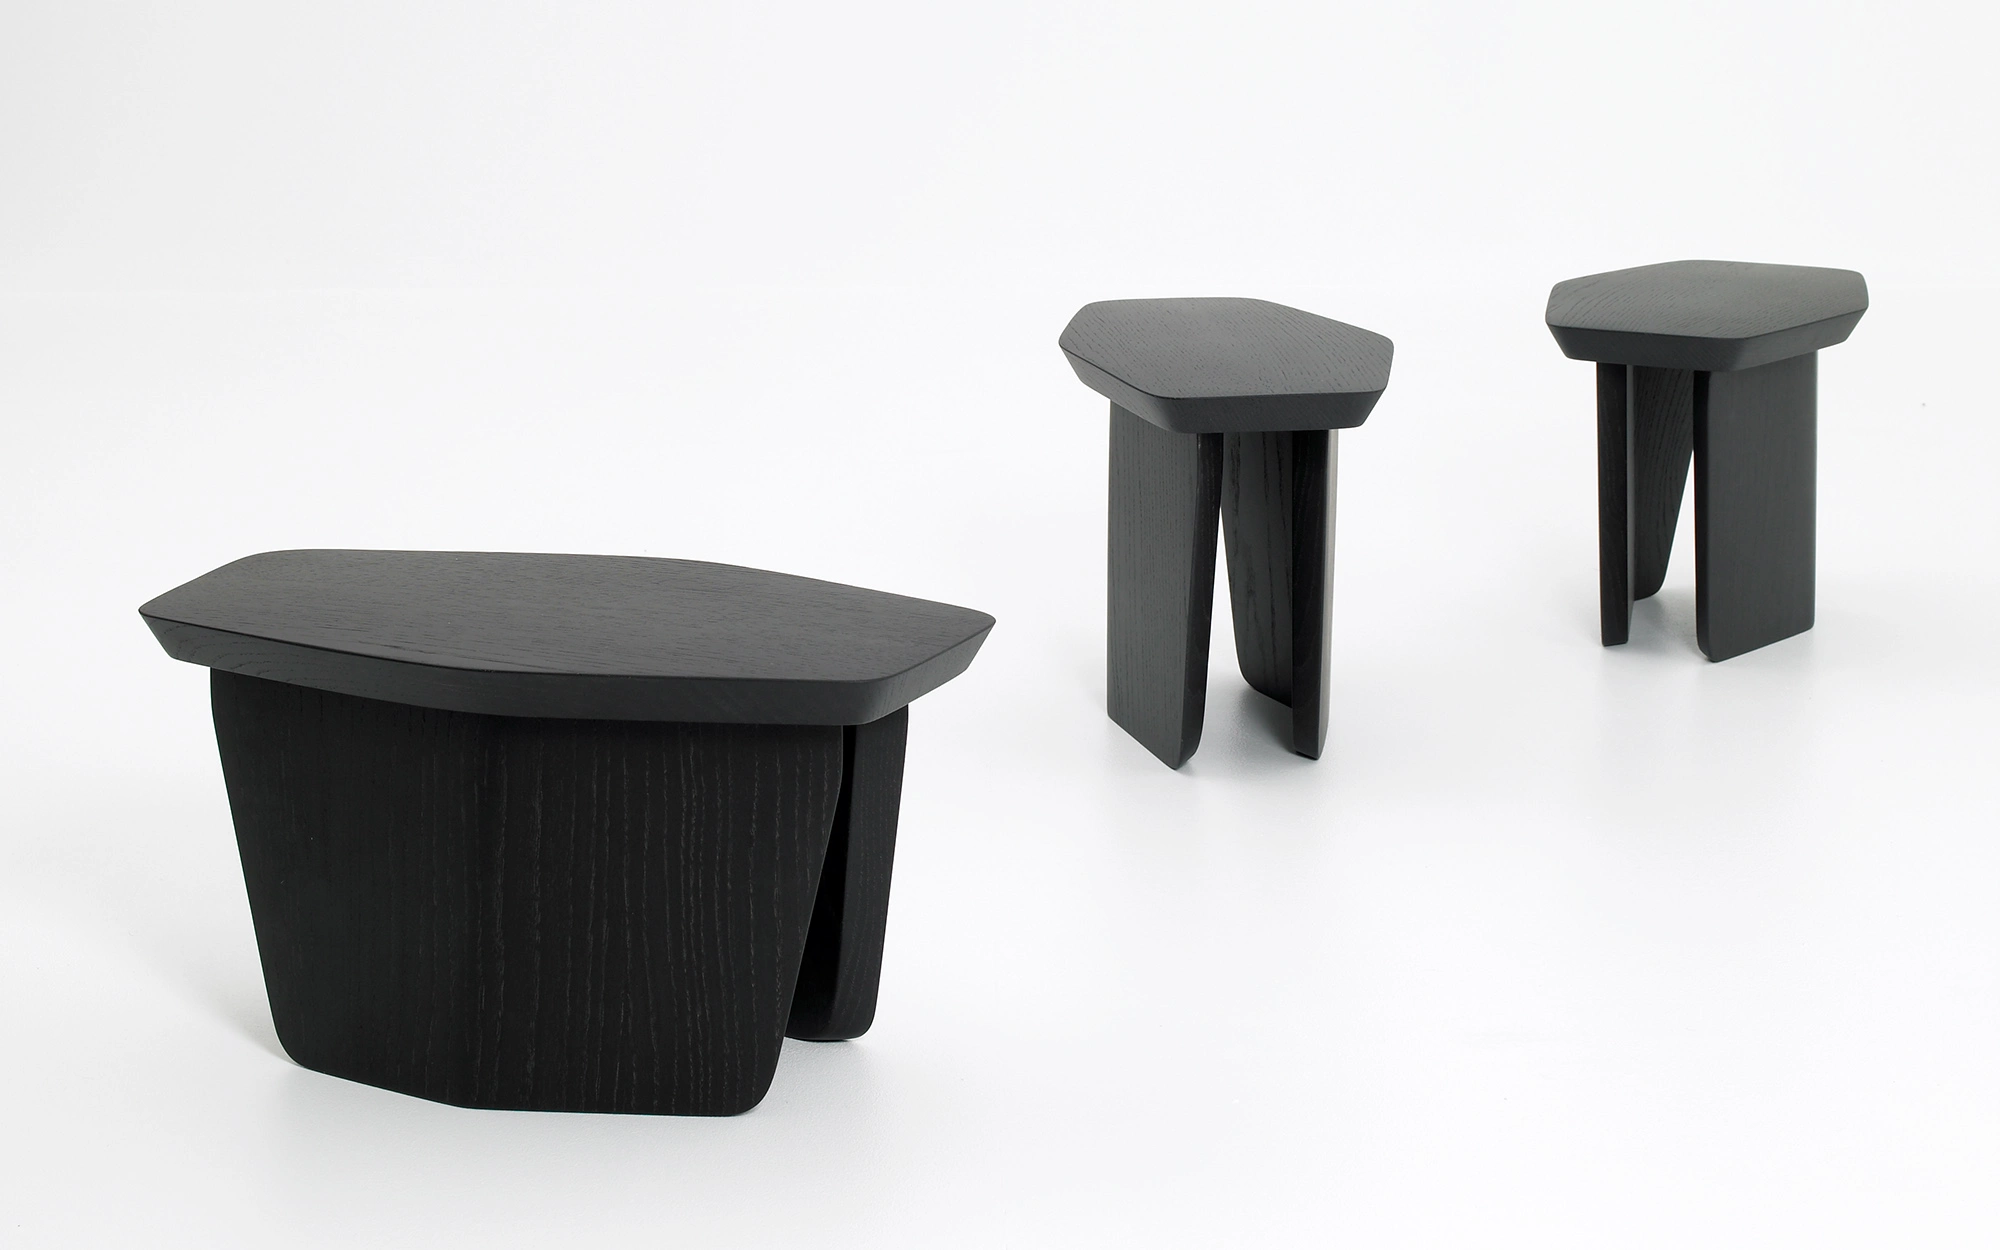 Stool - Ronan & Erwan Bouroullec - stool side-table- Galerie kreo